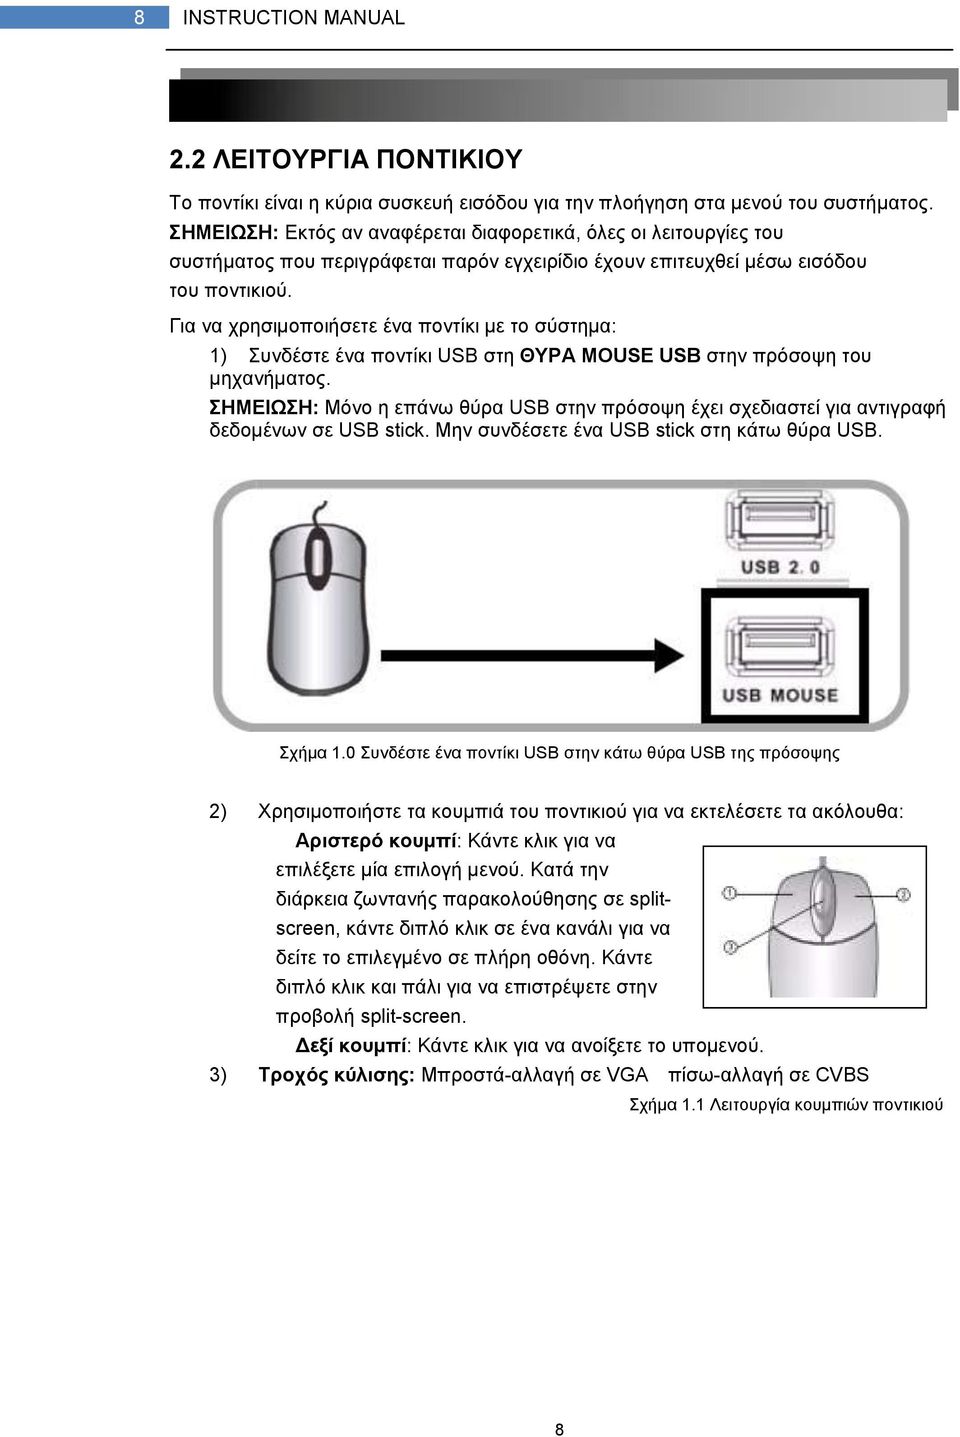 Για να χρησιμοποιήσετε ένα ποντίκι με το σύστημα: 1) Συνδέστε ένα ποντίκι USB στη ΘΥΡΑ MOUSE USB στην πρόσοψη του μηχανήματος.